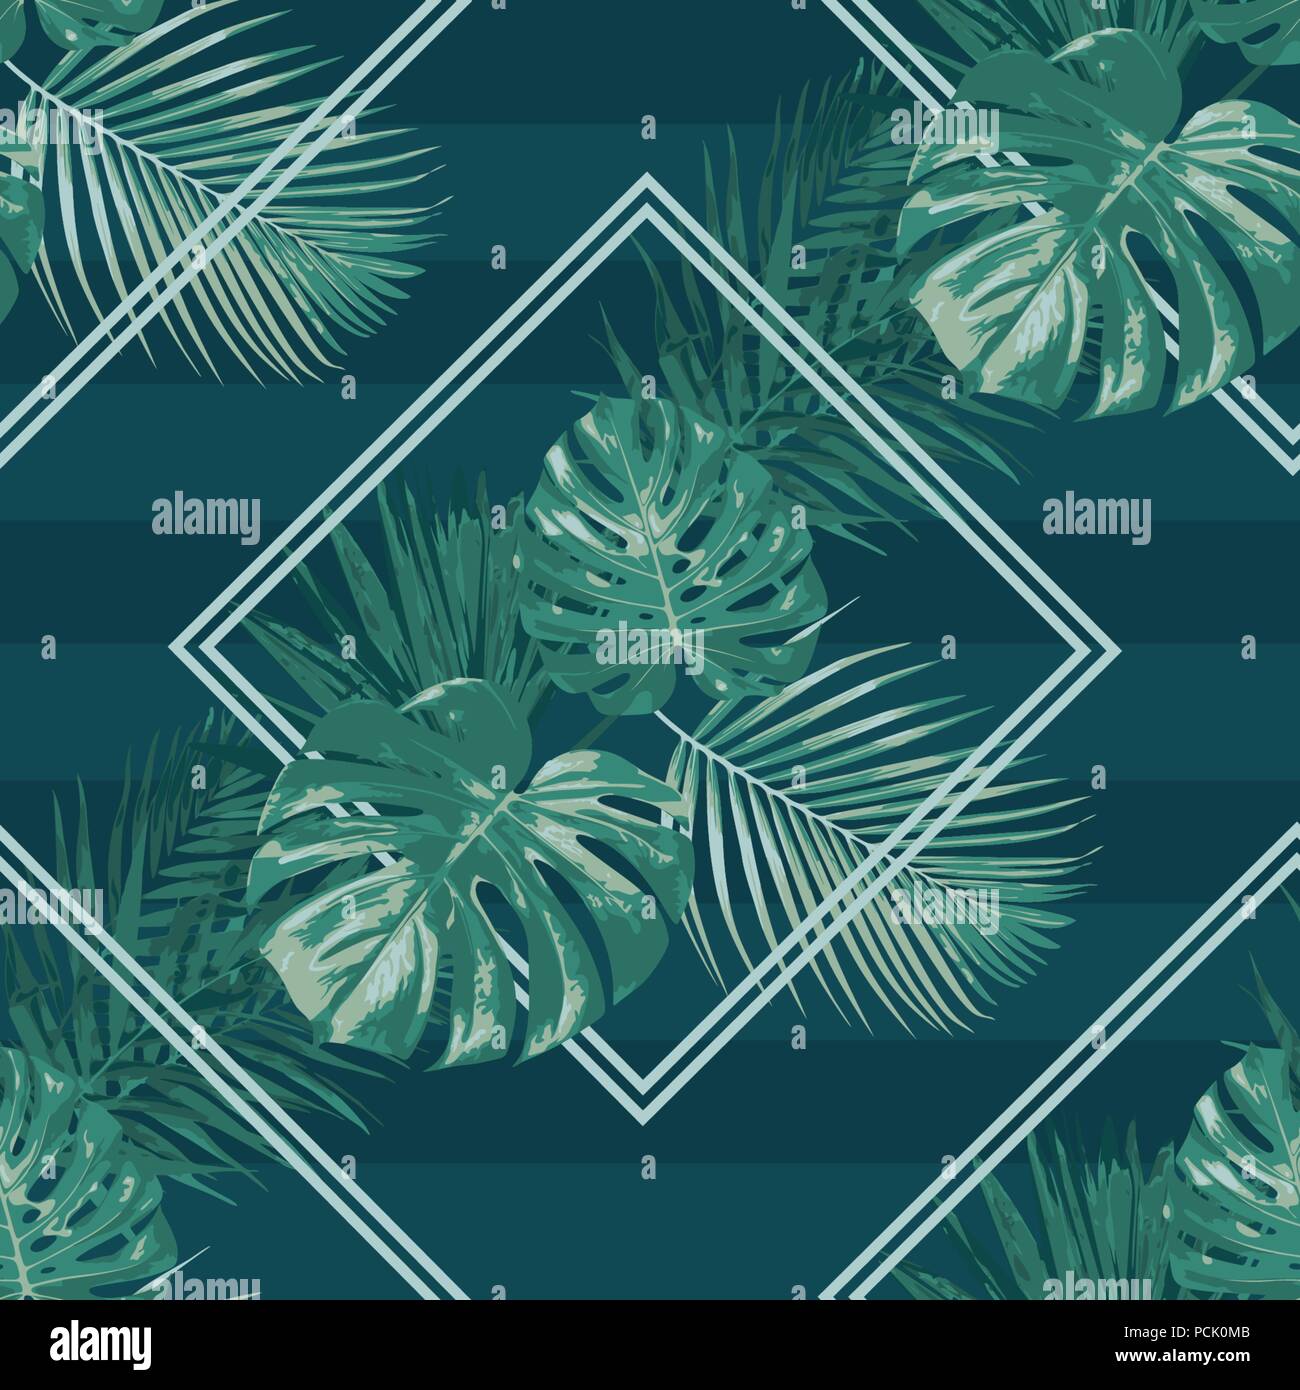 Emerald Forest rhombus Vektor nahtlose Muster tropischen dunklen Hintergrund Botanik grün Stock Vektor